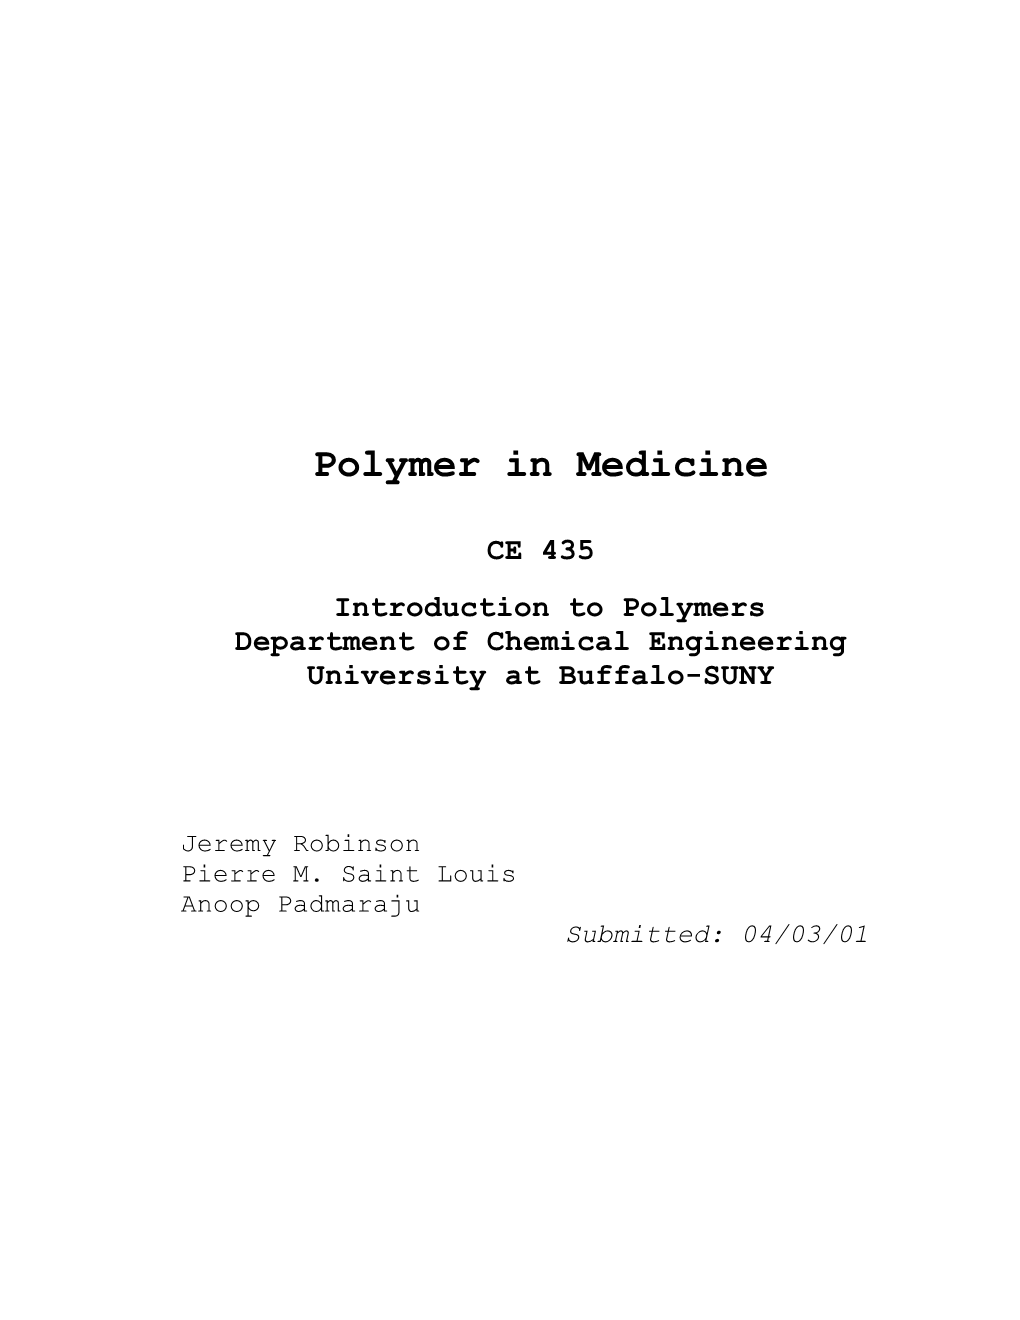 Polymer in Medecine